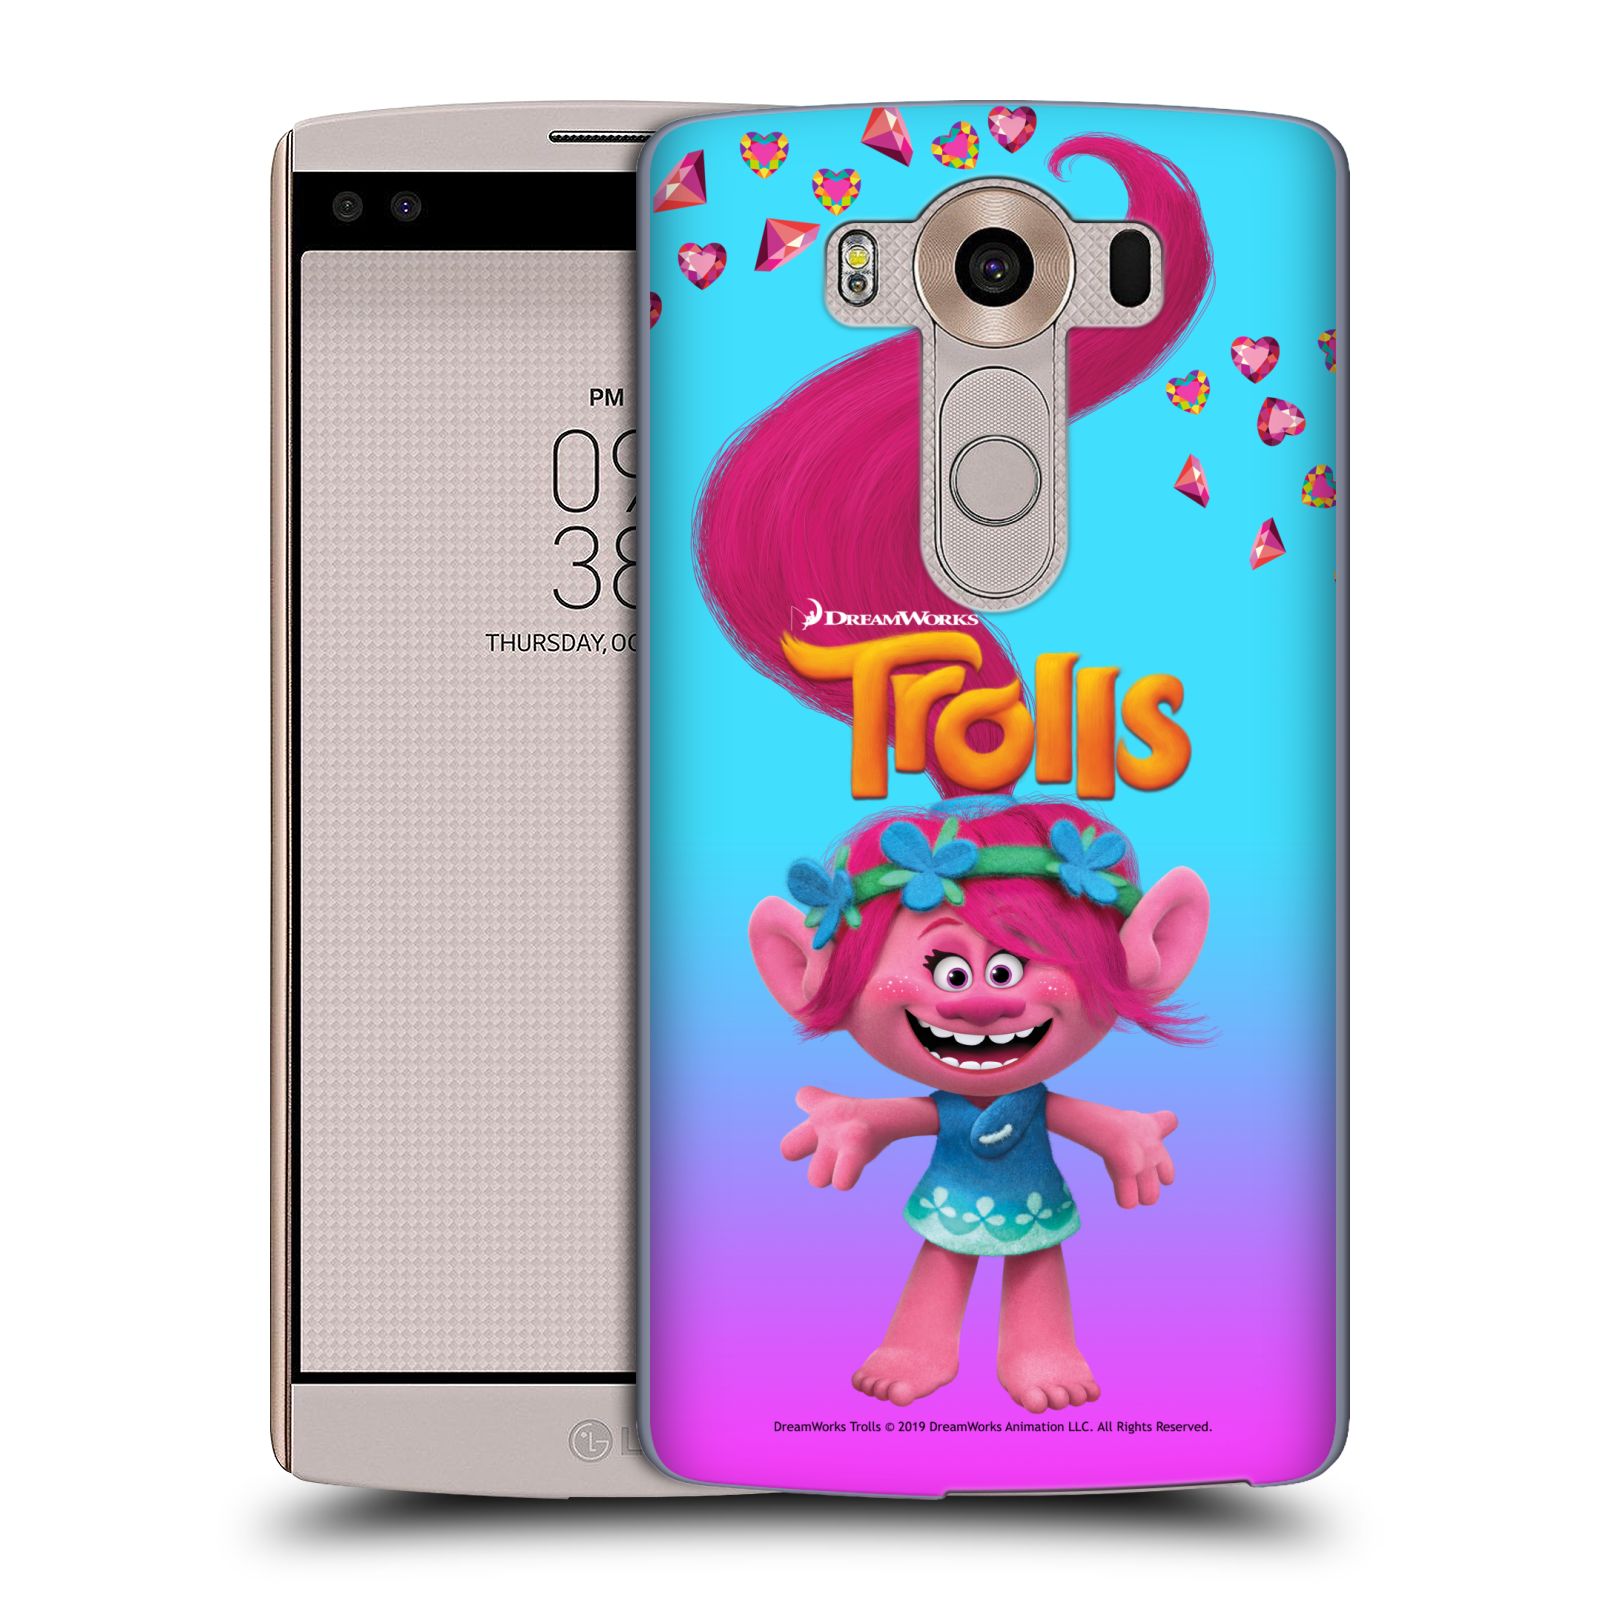 Pouzdro na mobil LG V10 - HEAD CASE - Pohádka - Trollové skřítek holčička Poppy